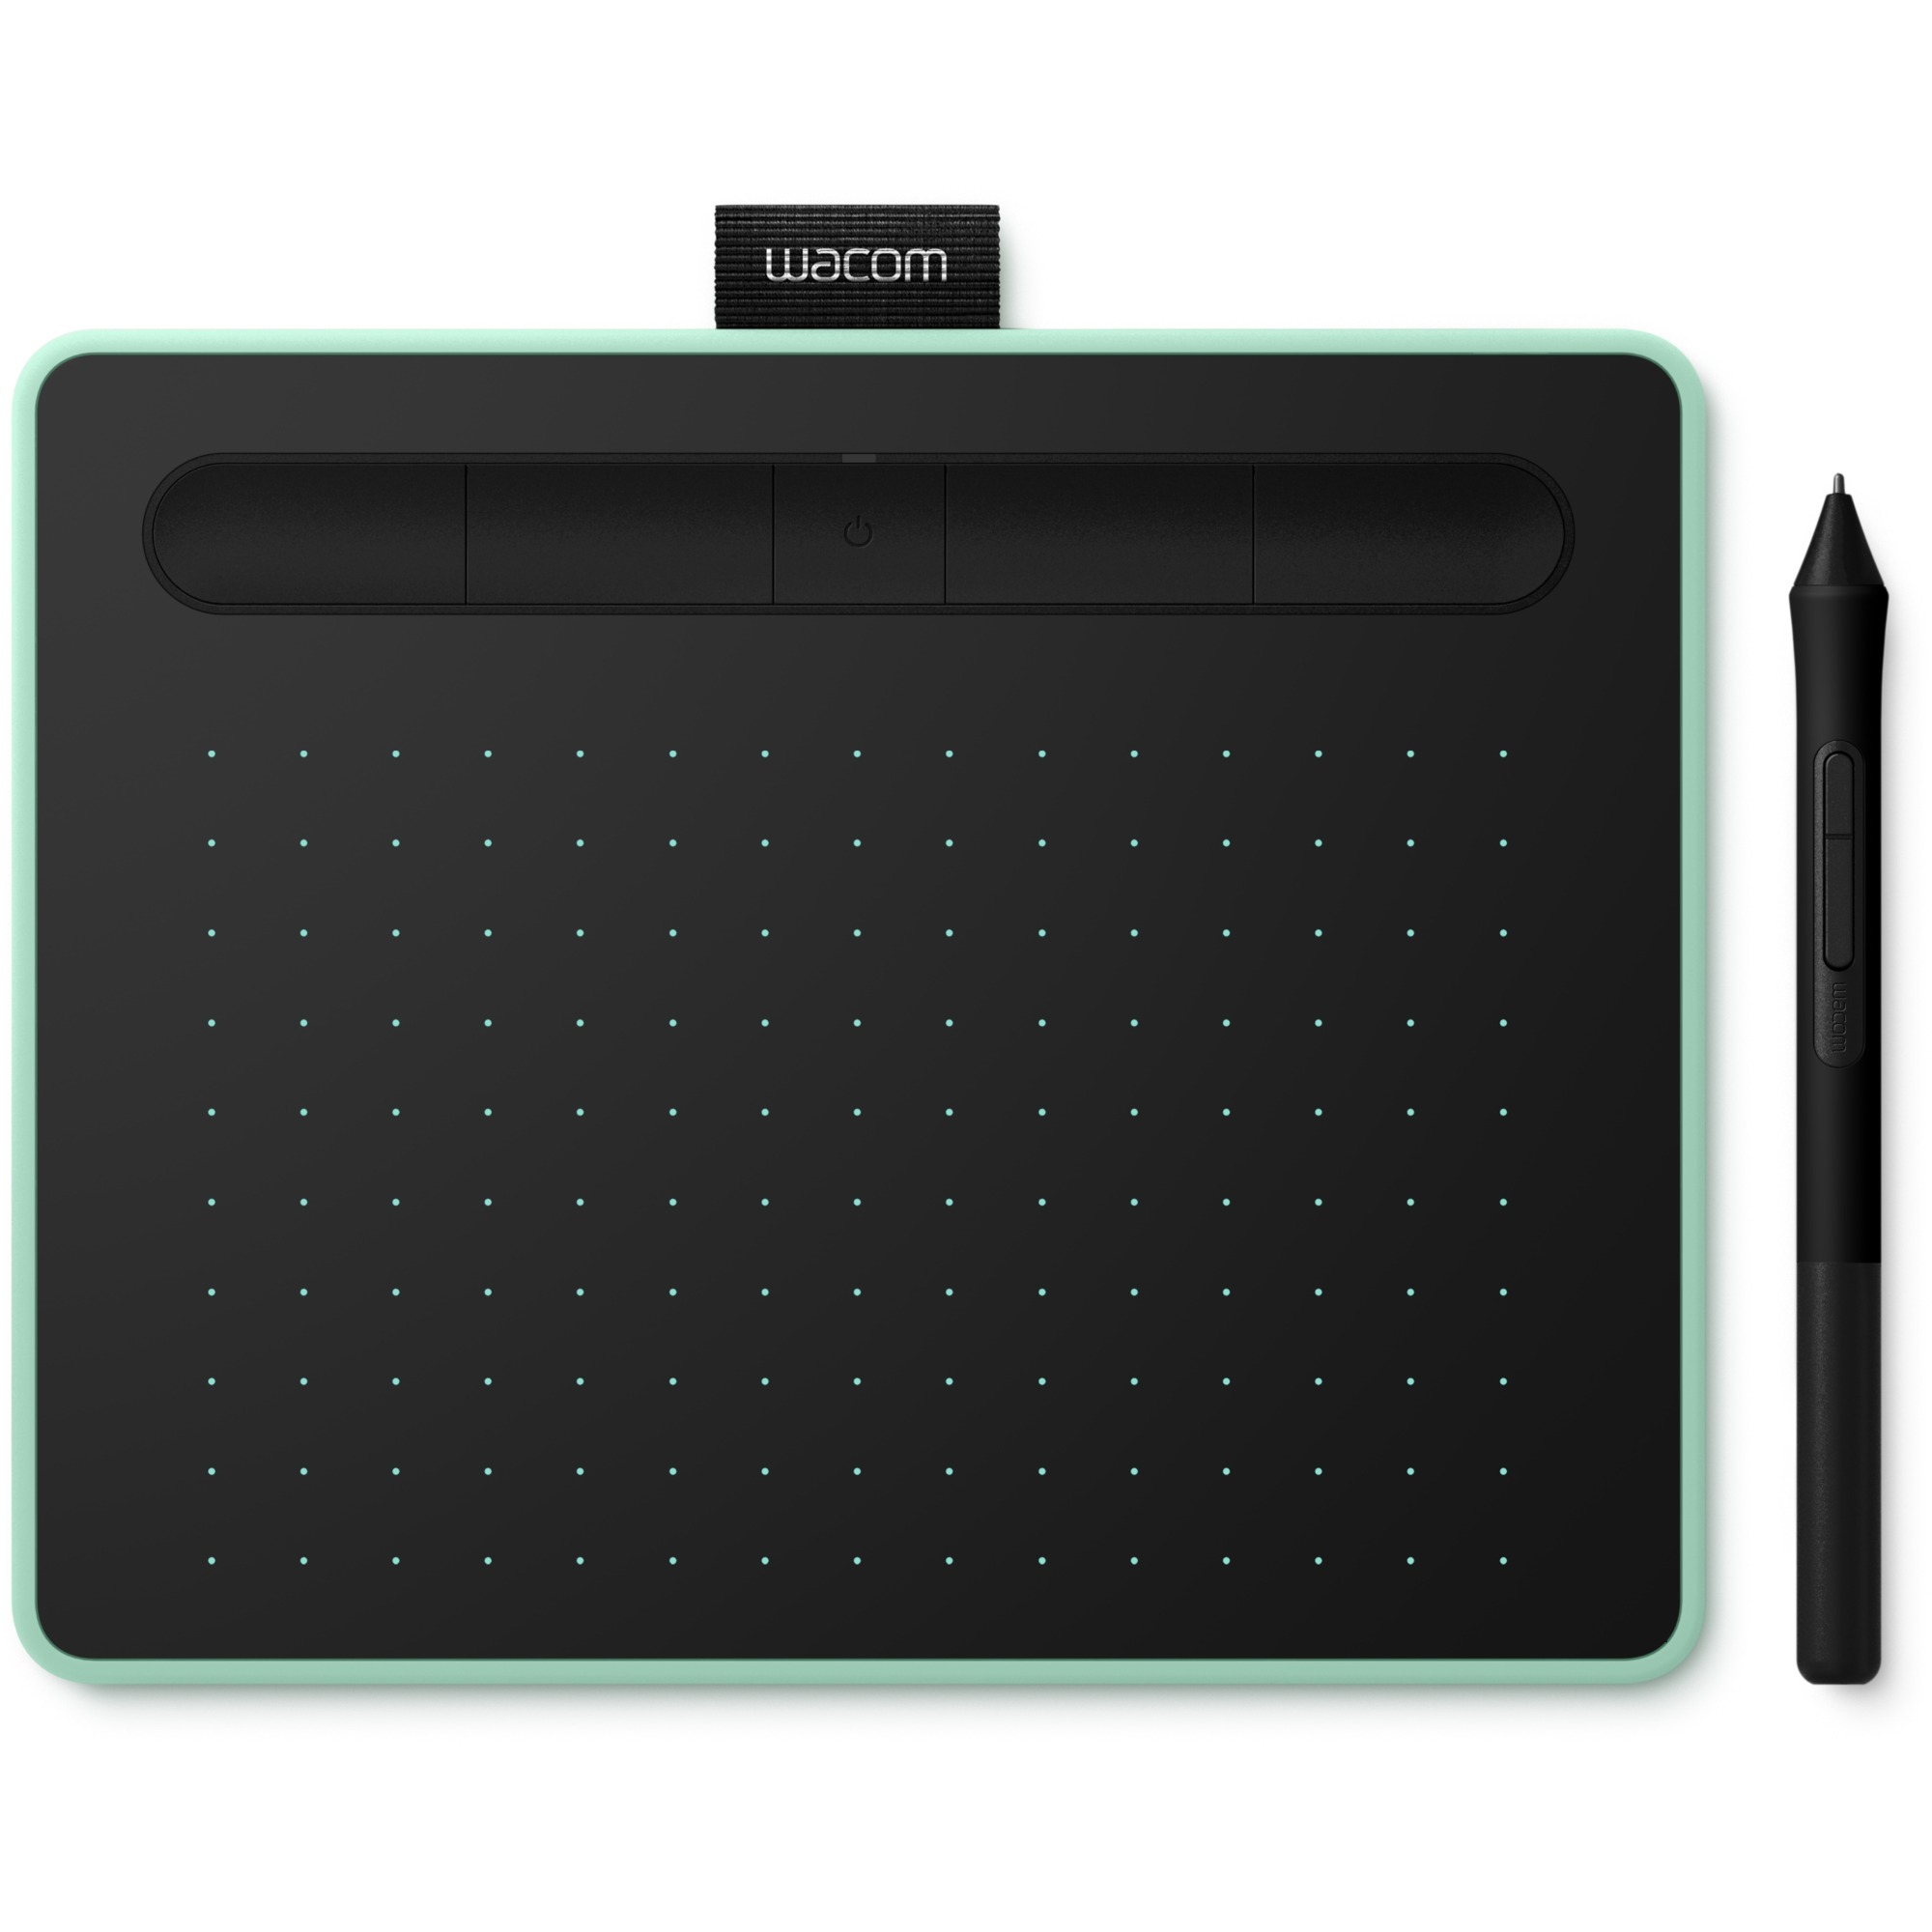 Intuos S tablet graficzny 2540 linii na cal 152 x 95 mm USB/Bluetooth Czarny, Zielony